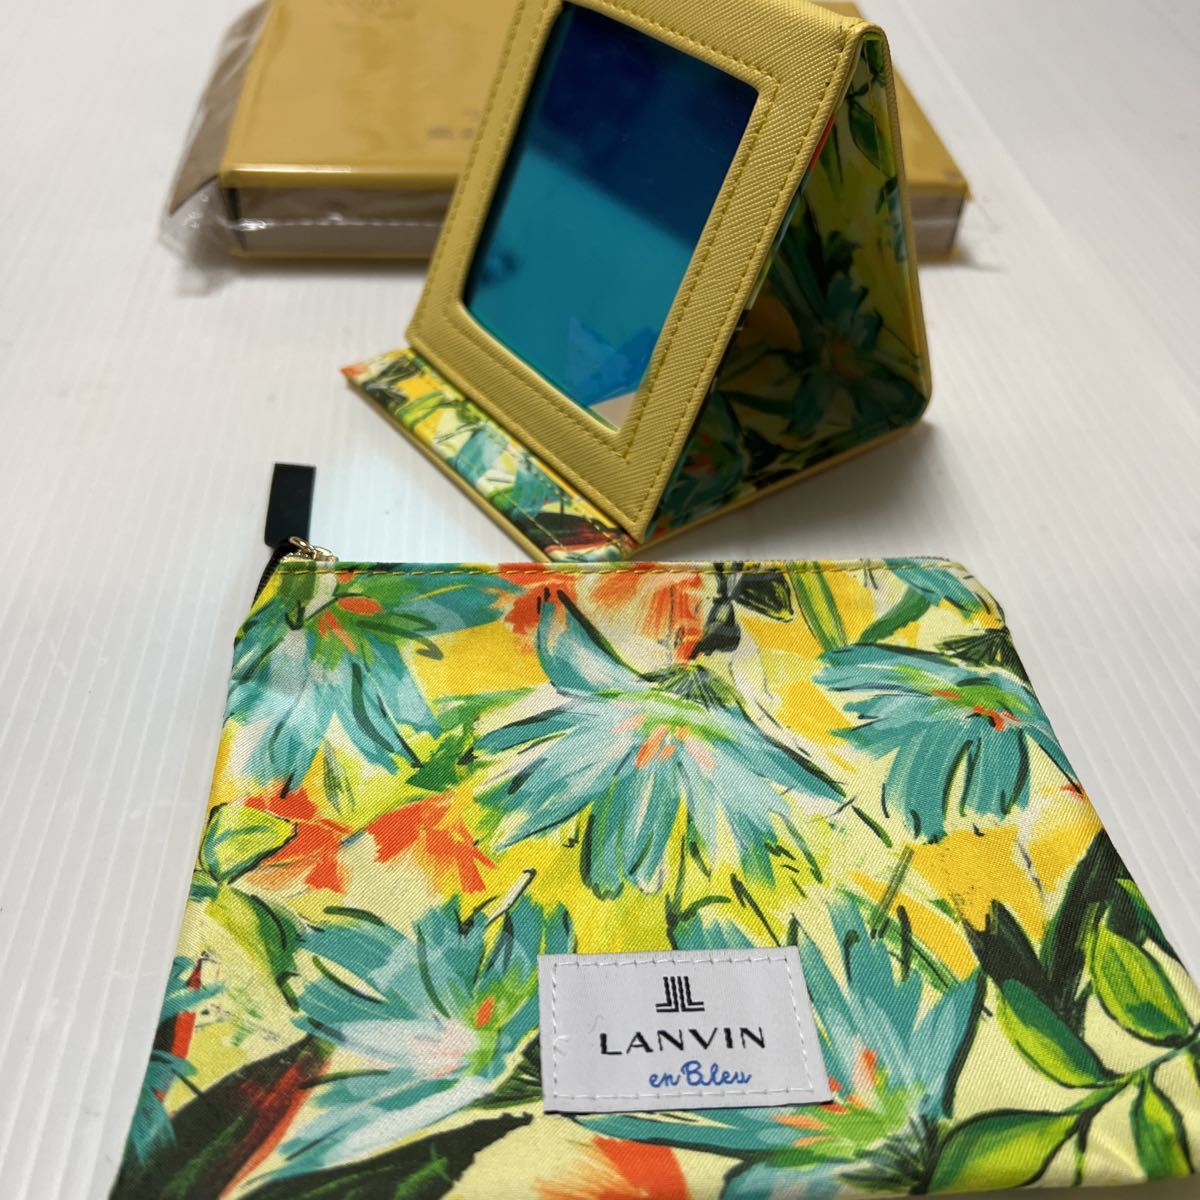 LANVIN en Bleu Lanvin on голубой роскошный зеркало & сумка комплект (Sweet2023.6 месяц номер дополнение )